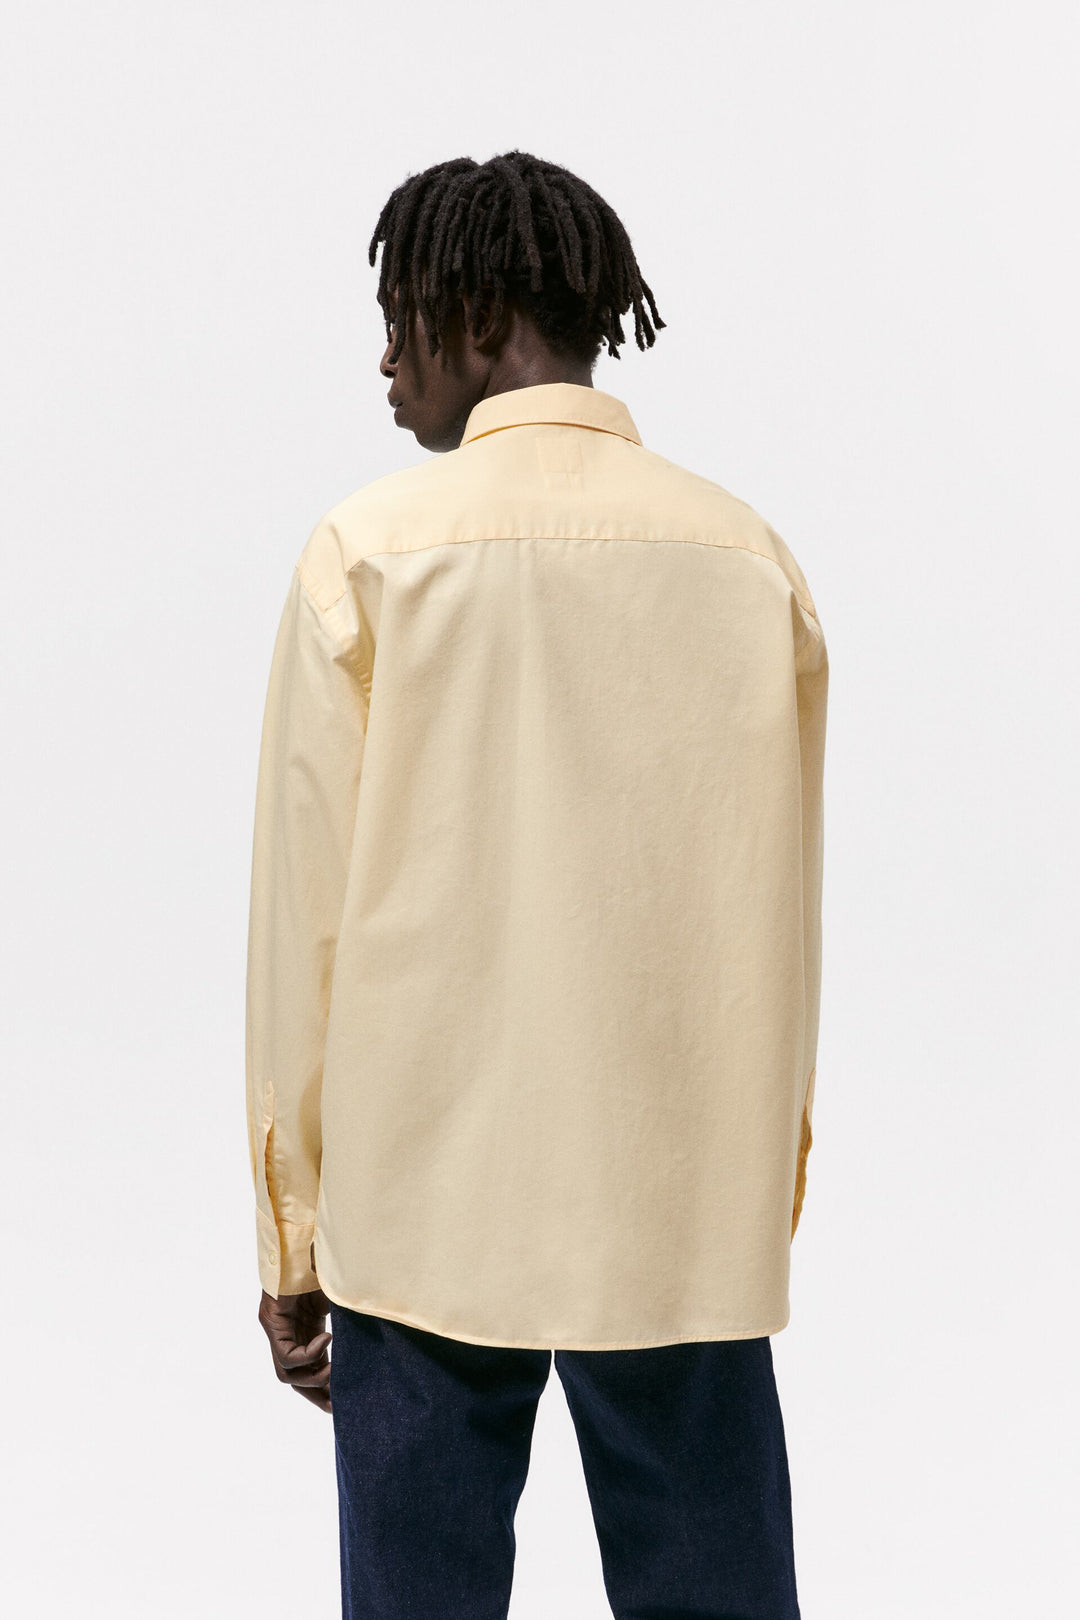 Zara Men F/S Casual Cotton Shirt 5588/402/300